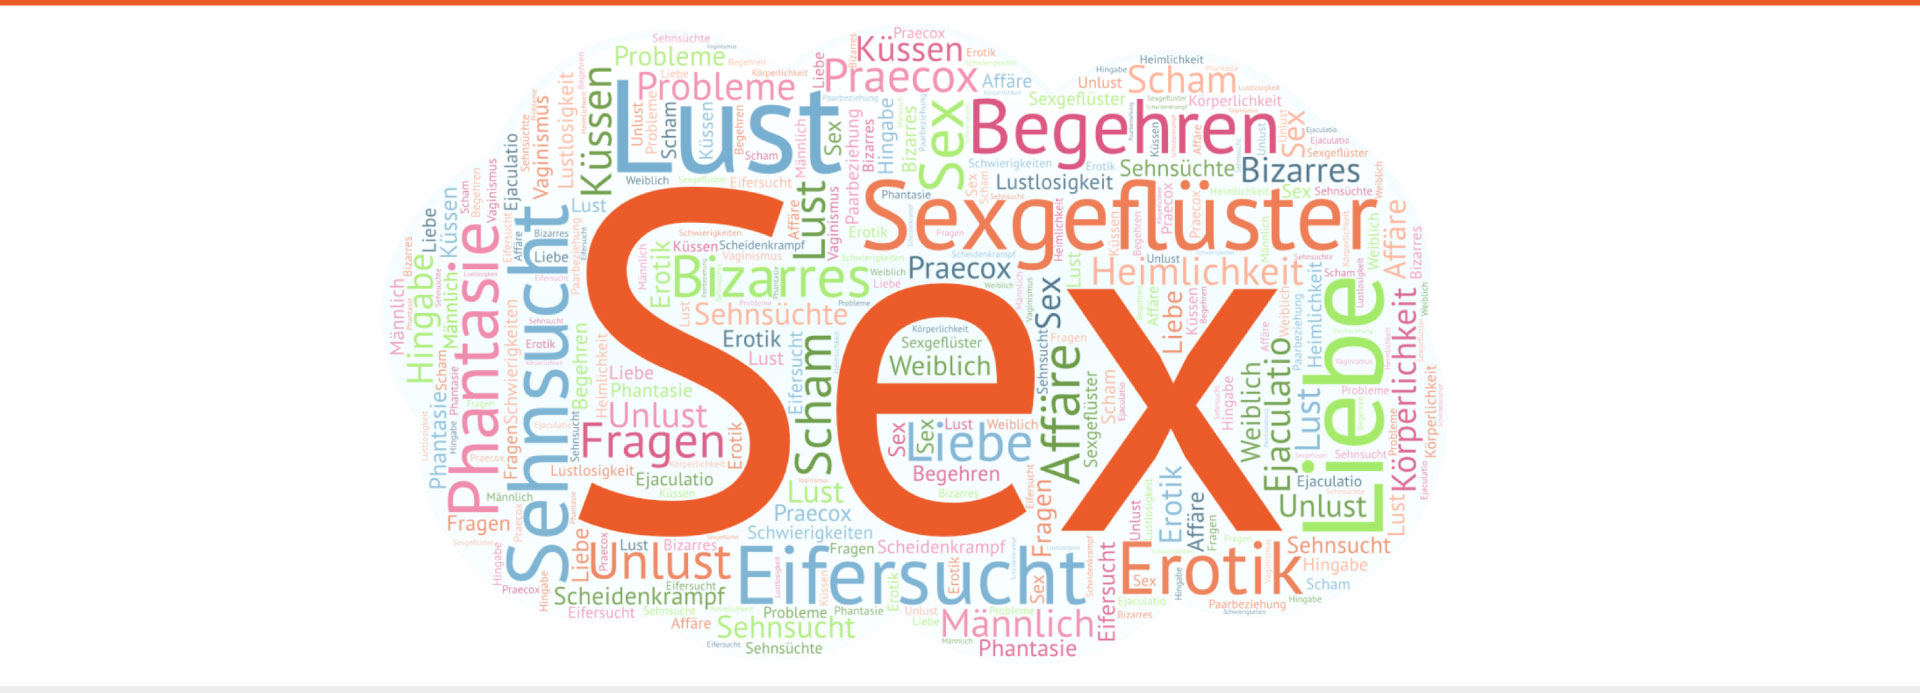 themen - beredenswert: Sexualberatung in Karlsruhe / Frauengruppen zu weiblicher Sexualität / Paarberatung / Einzelberatung / Lebensberatung